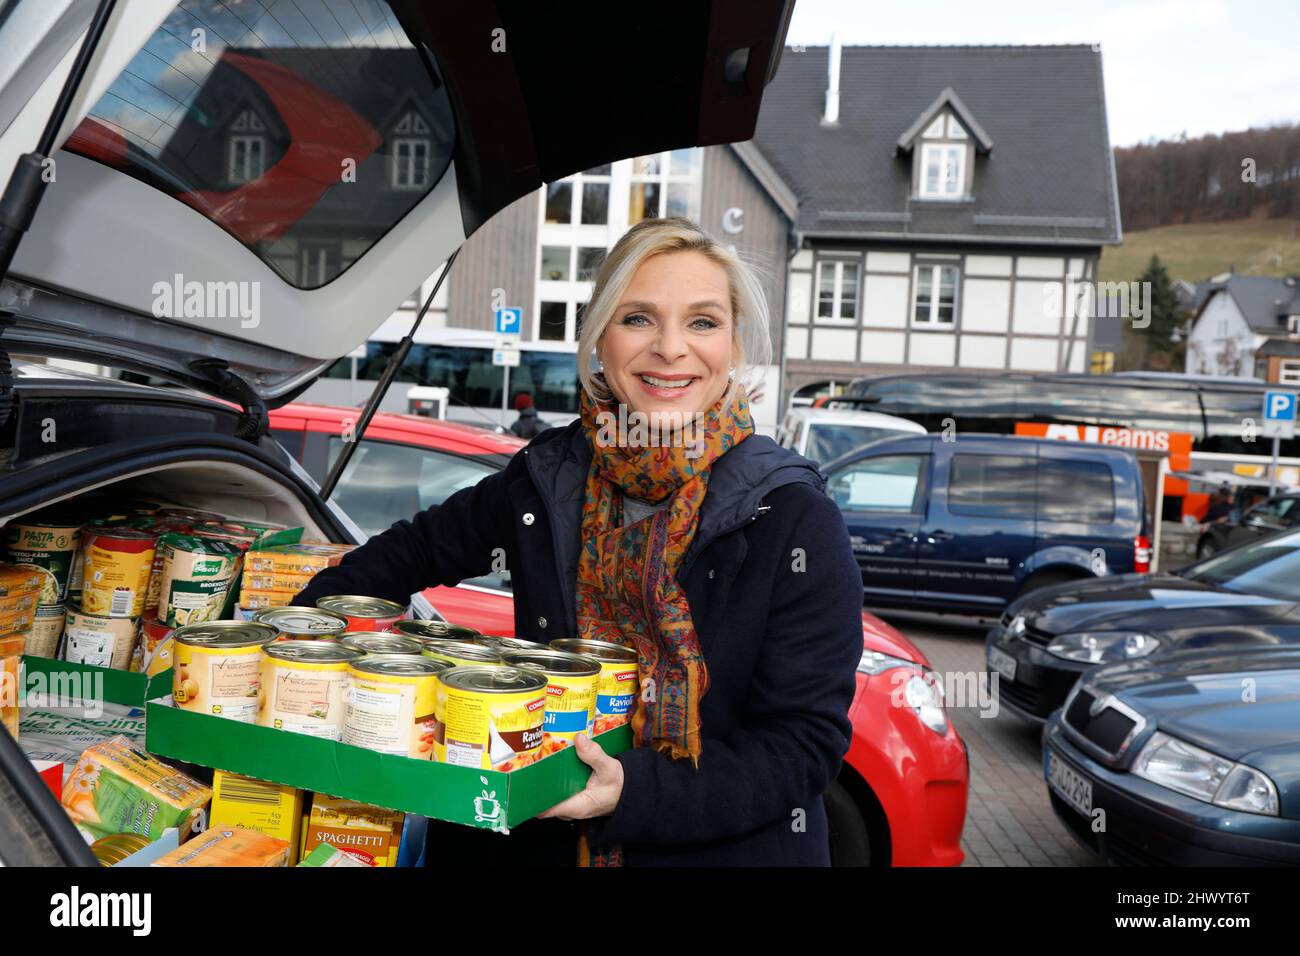 Uta Bresan engagiert sich für die Bus Brücke und hilft beim beladen der Busse. Außerdem brachte sie einen Kofferraum voller Lebensmittel - Zwei Reiseb Stock Photo